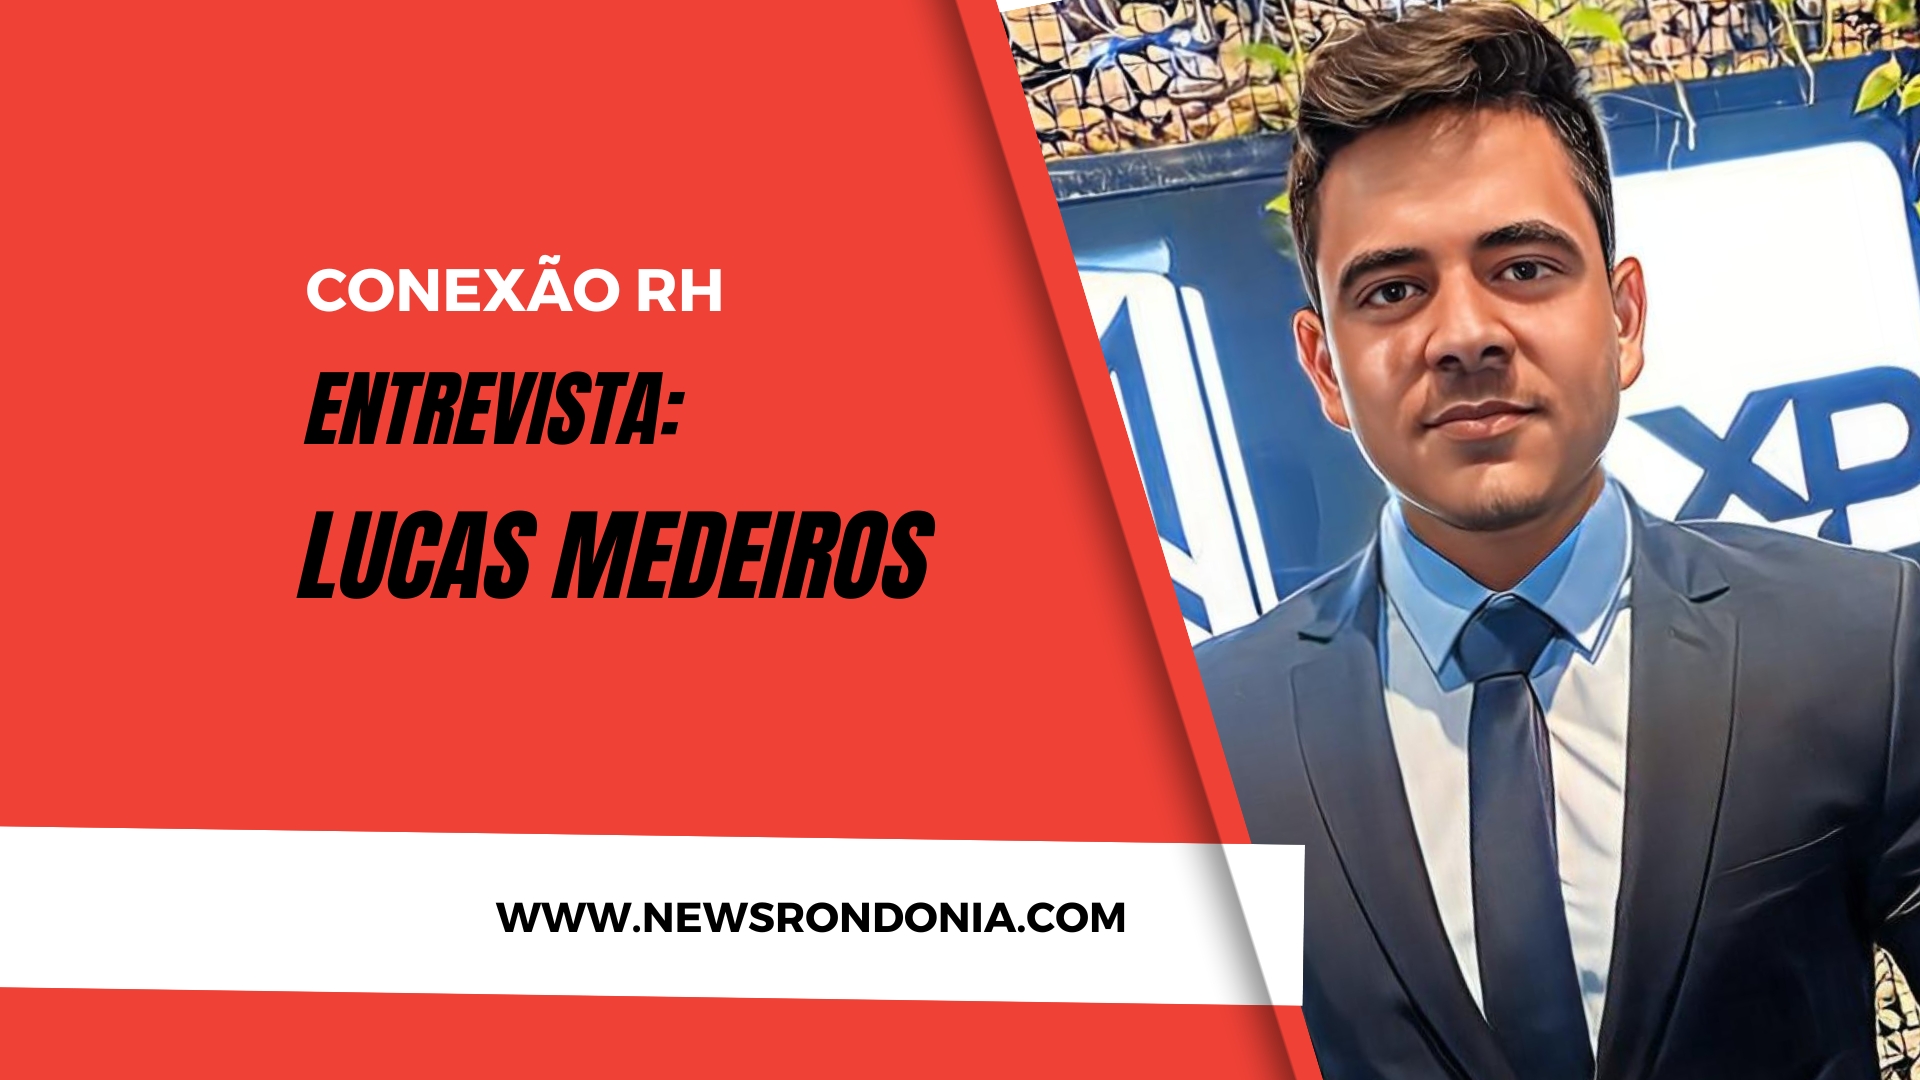 Conexão RH entrevista: Lucas Medeiros - Consultor Financeiro - News Rondônia